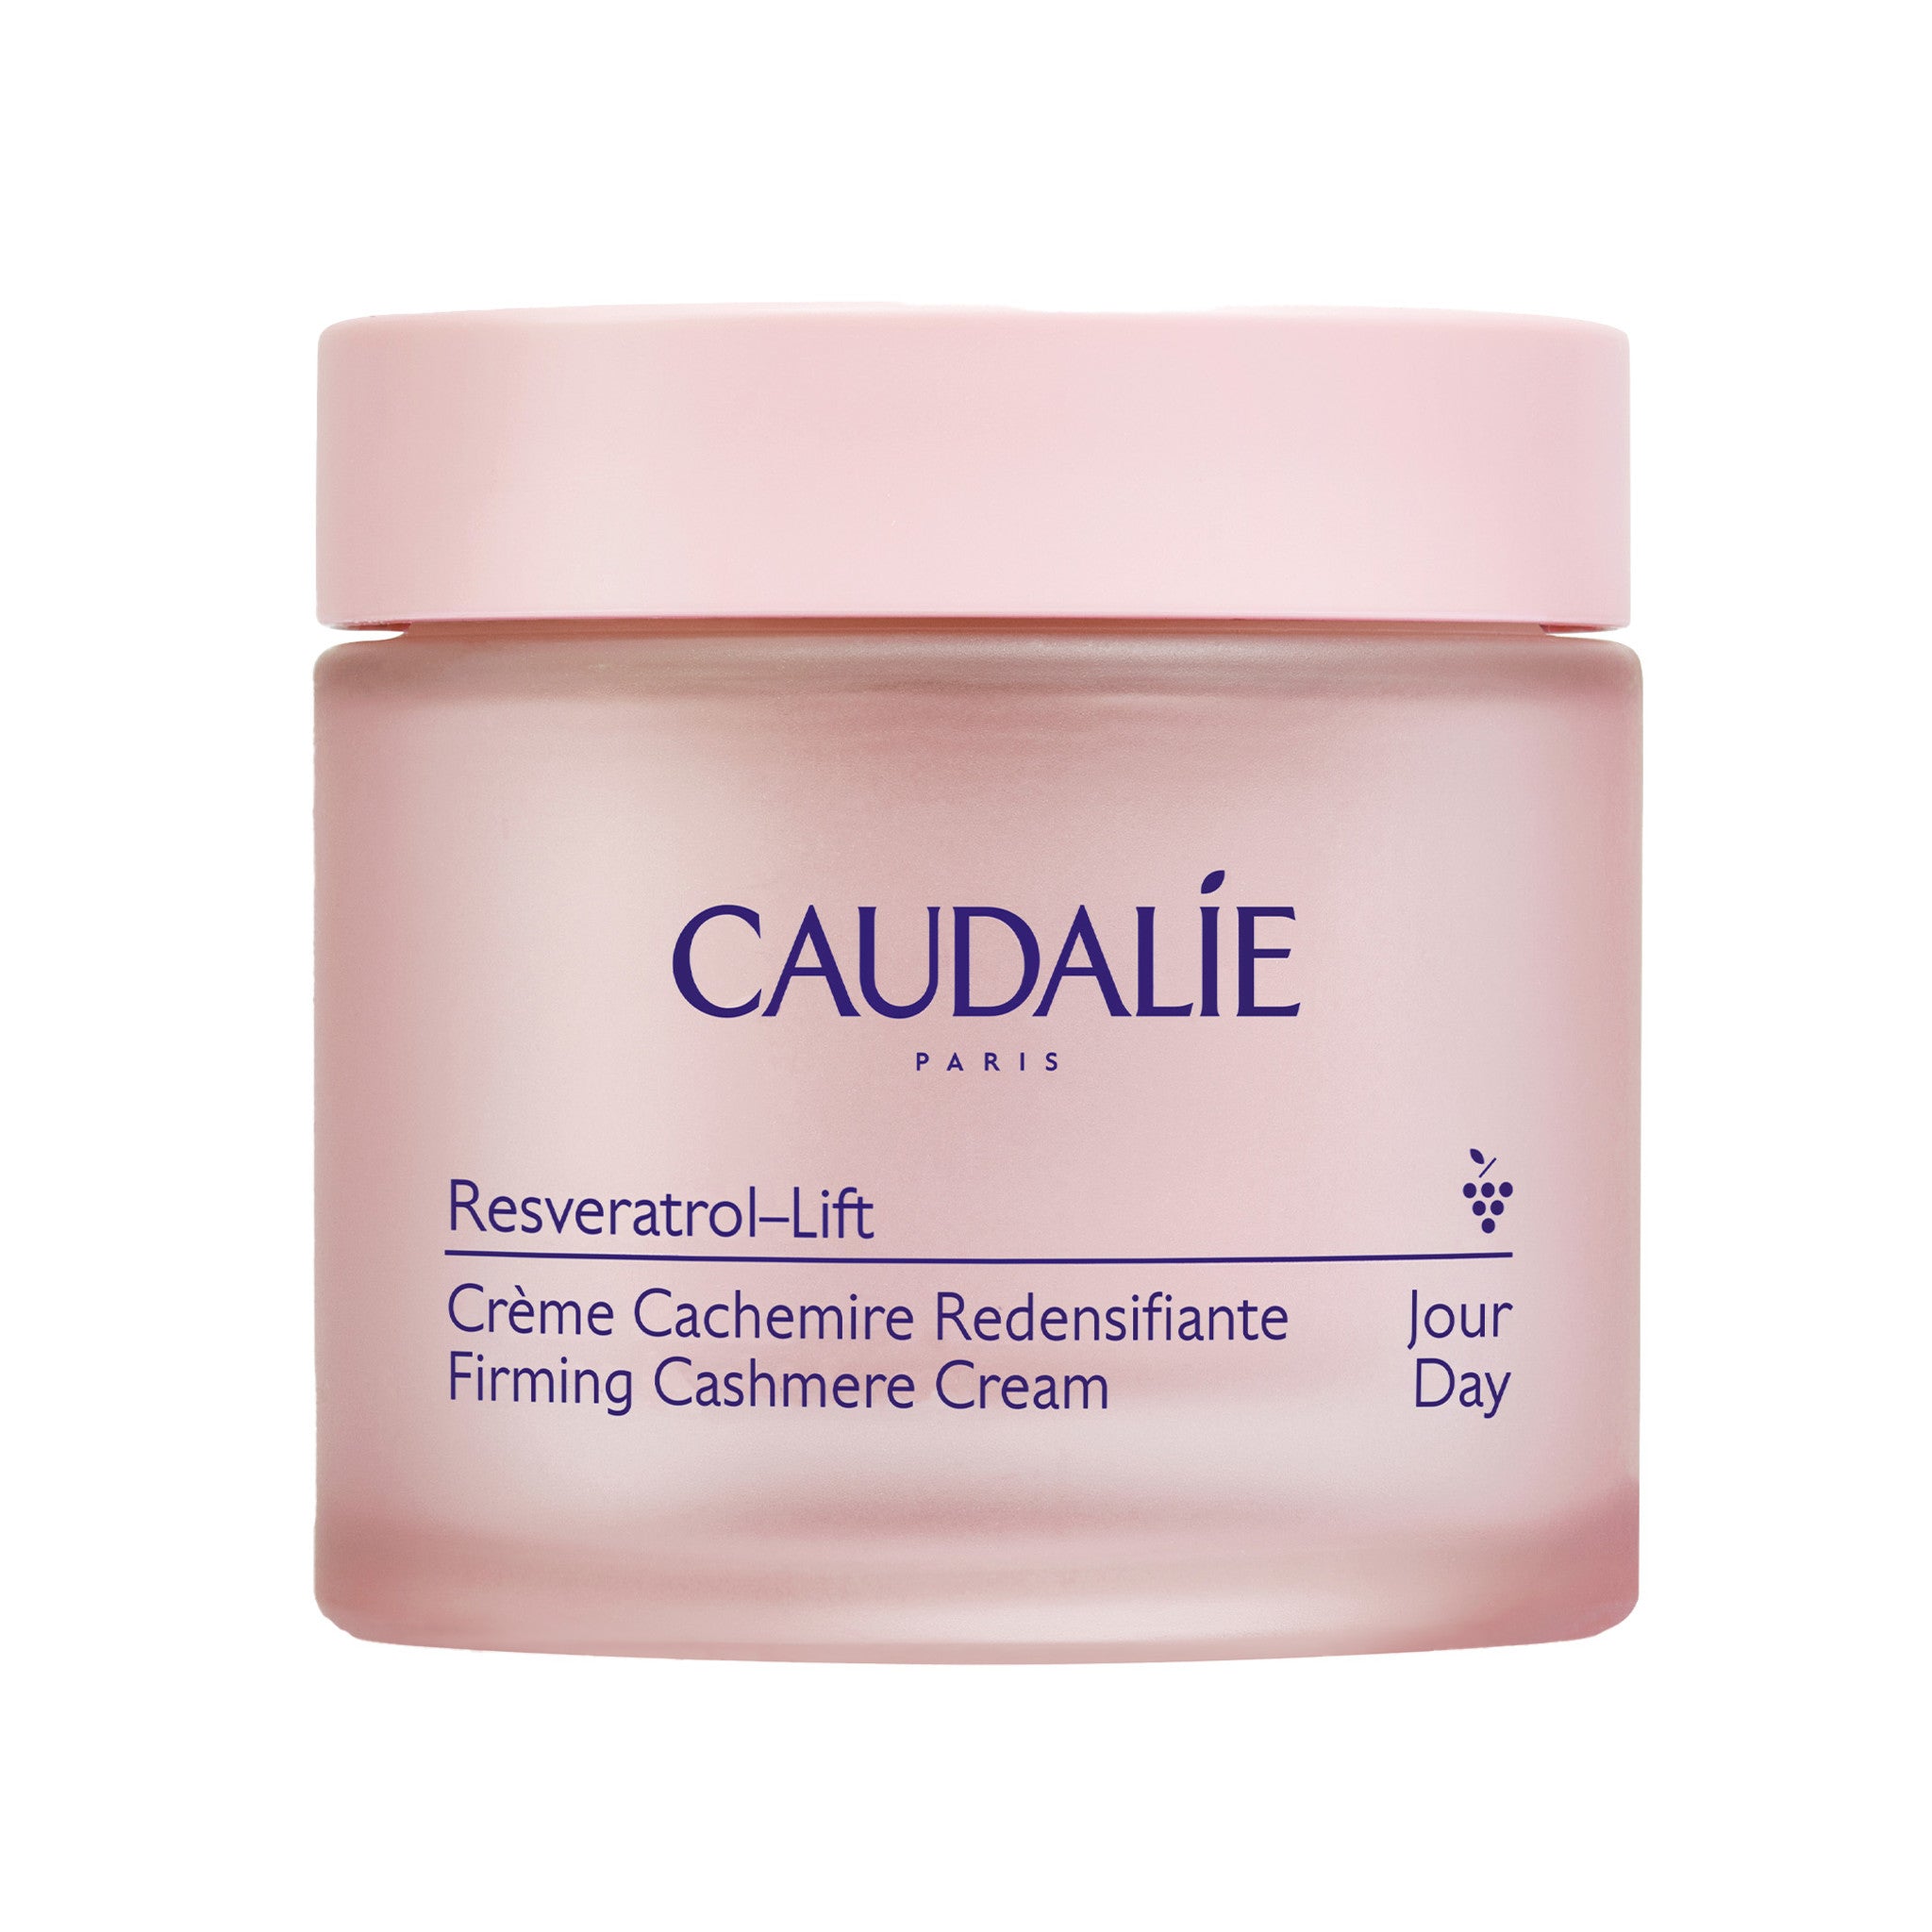 Caudalie Resveratrol-Lift Firming Cashmere Cream main image.